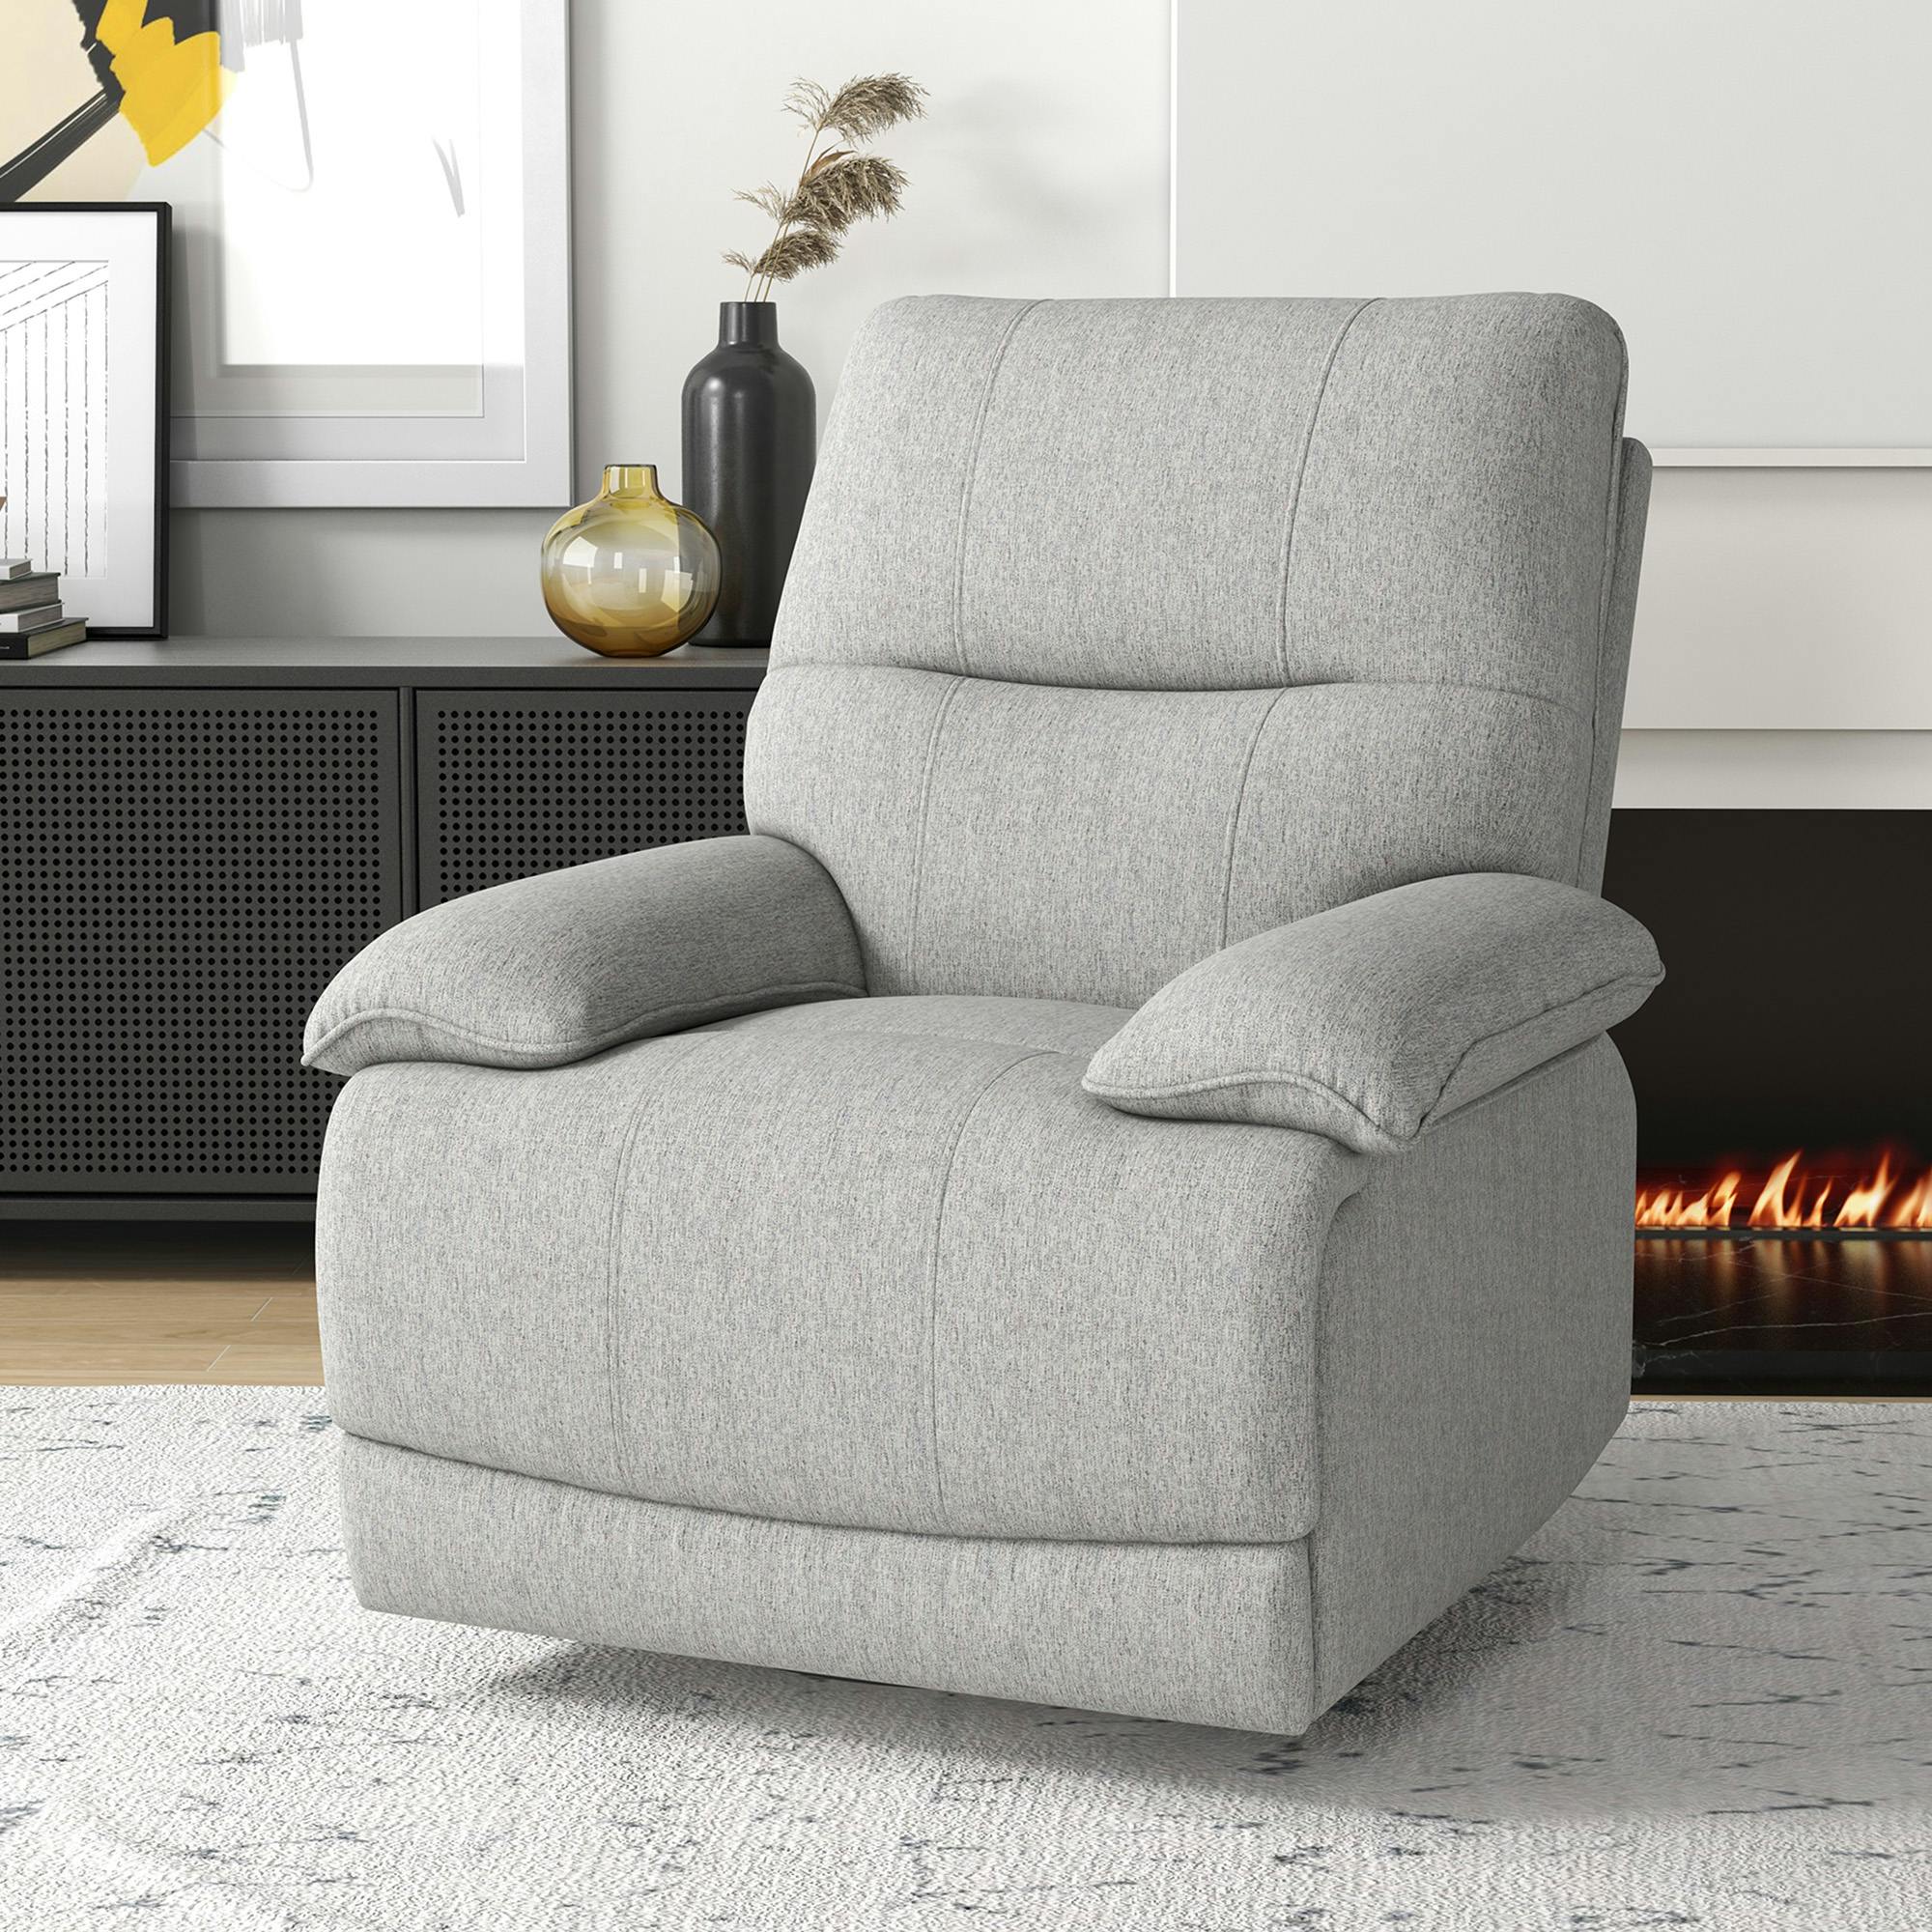 Sillón relax reclinable manual hasta 145° HOMCOM 68x87x100 cm  gris_839-426V00GY